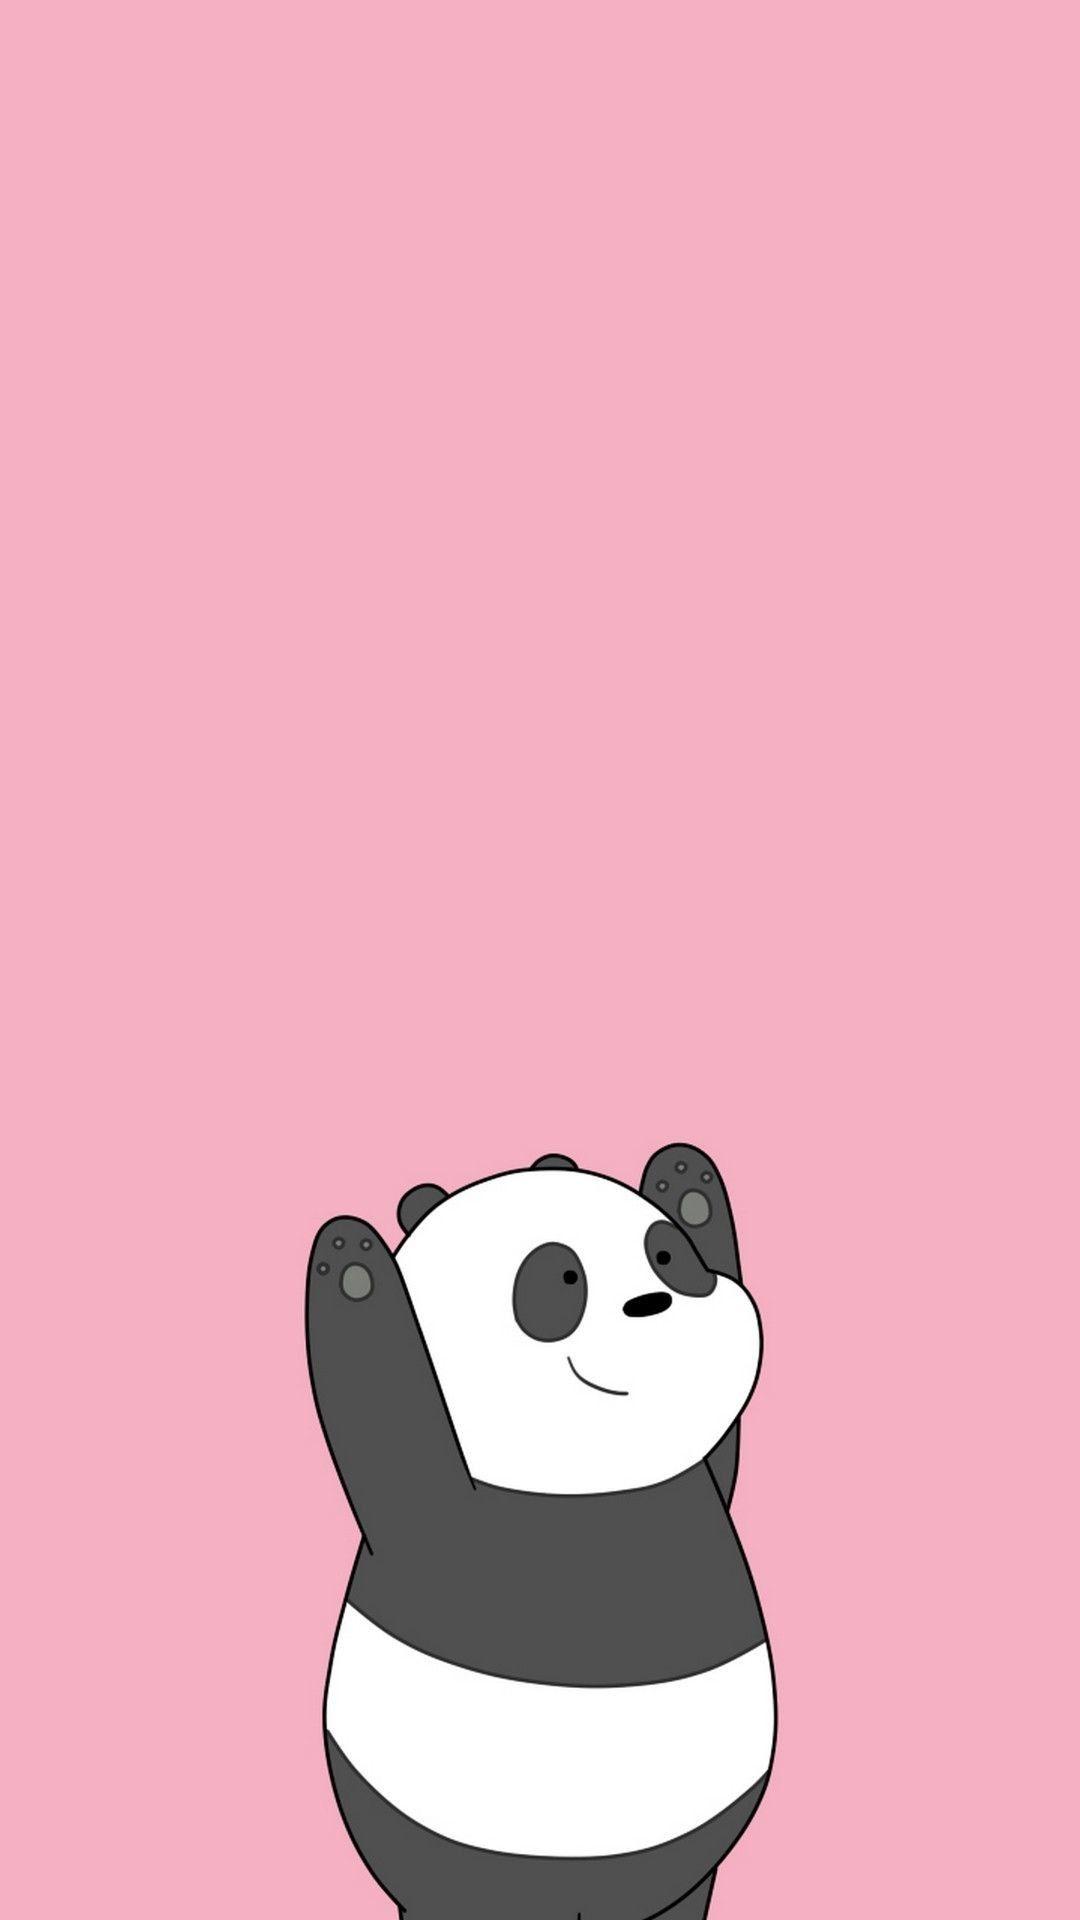 Funny Cartoon Panda Wallpapers Top Free Funny Cartoon Panda